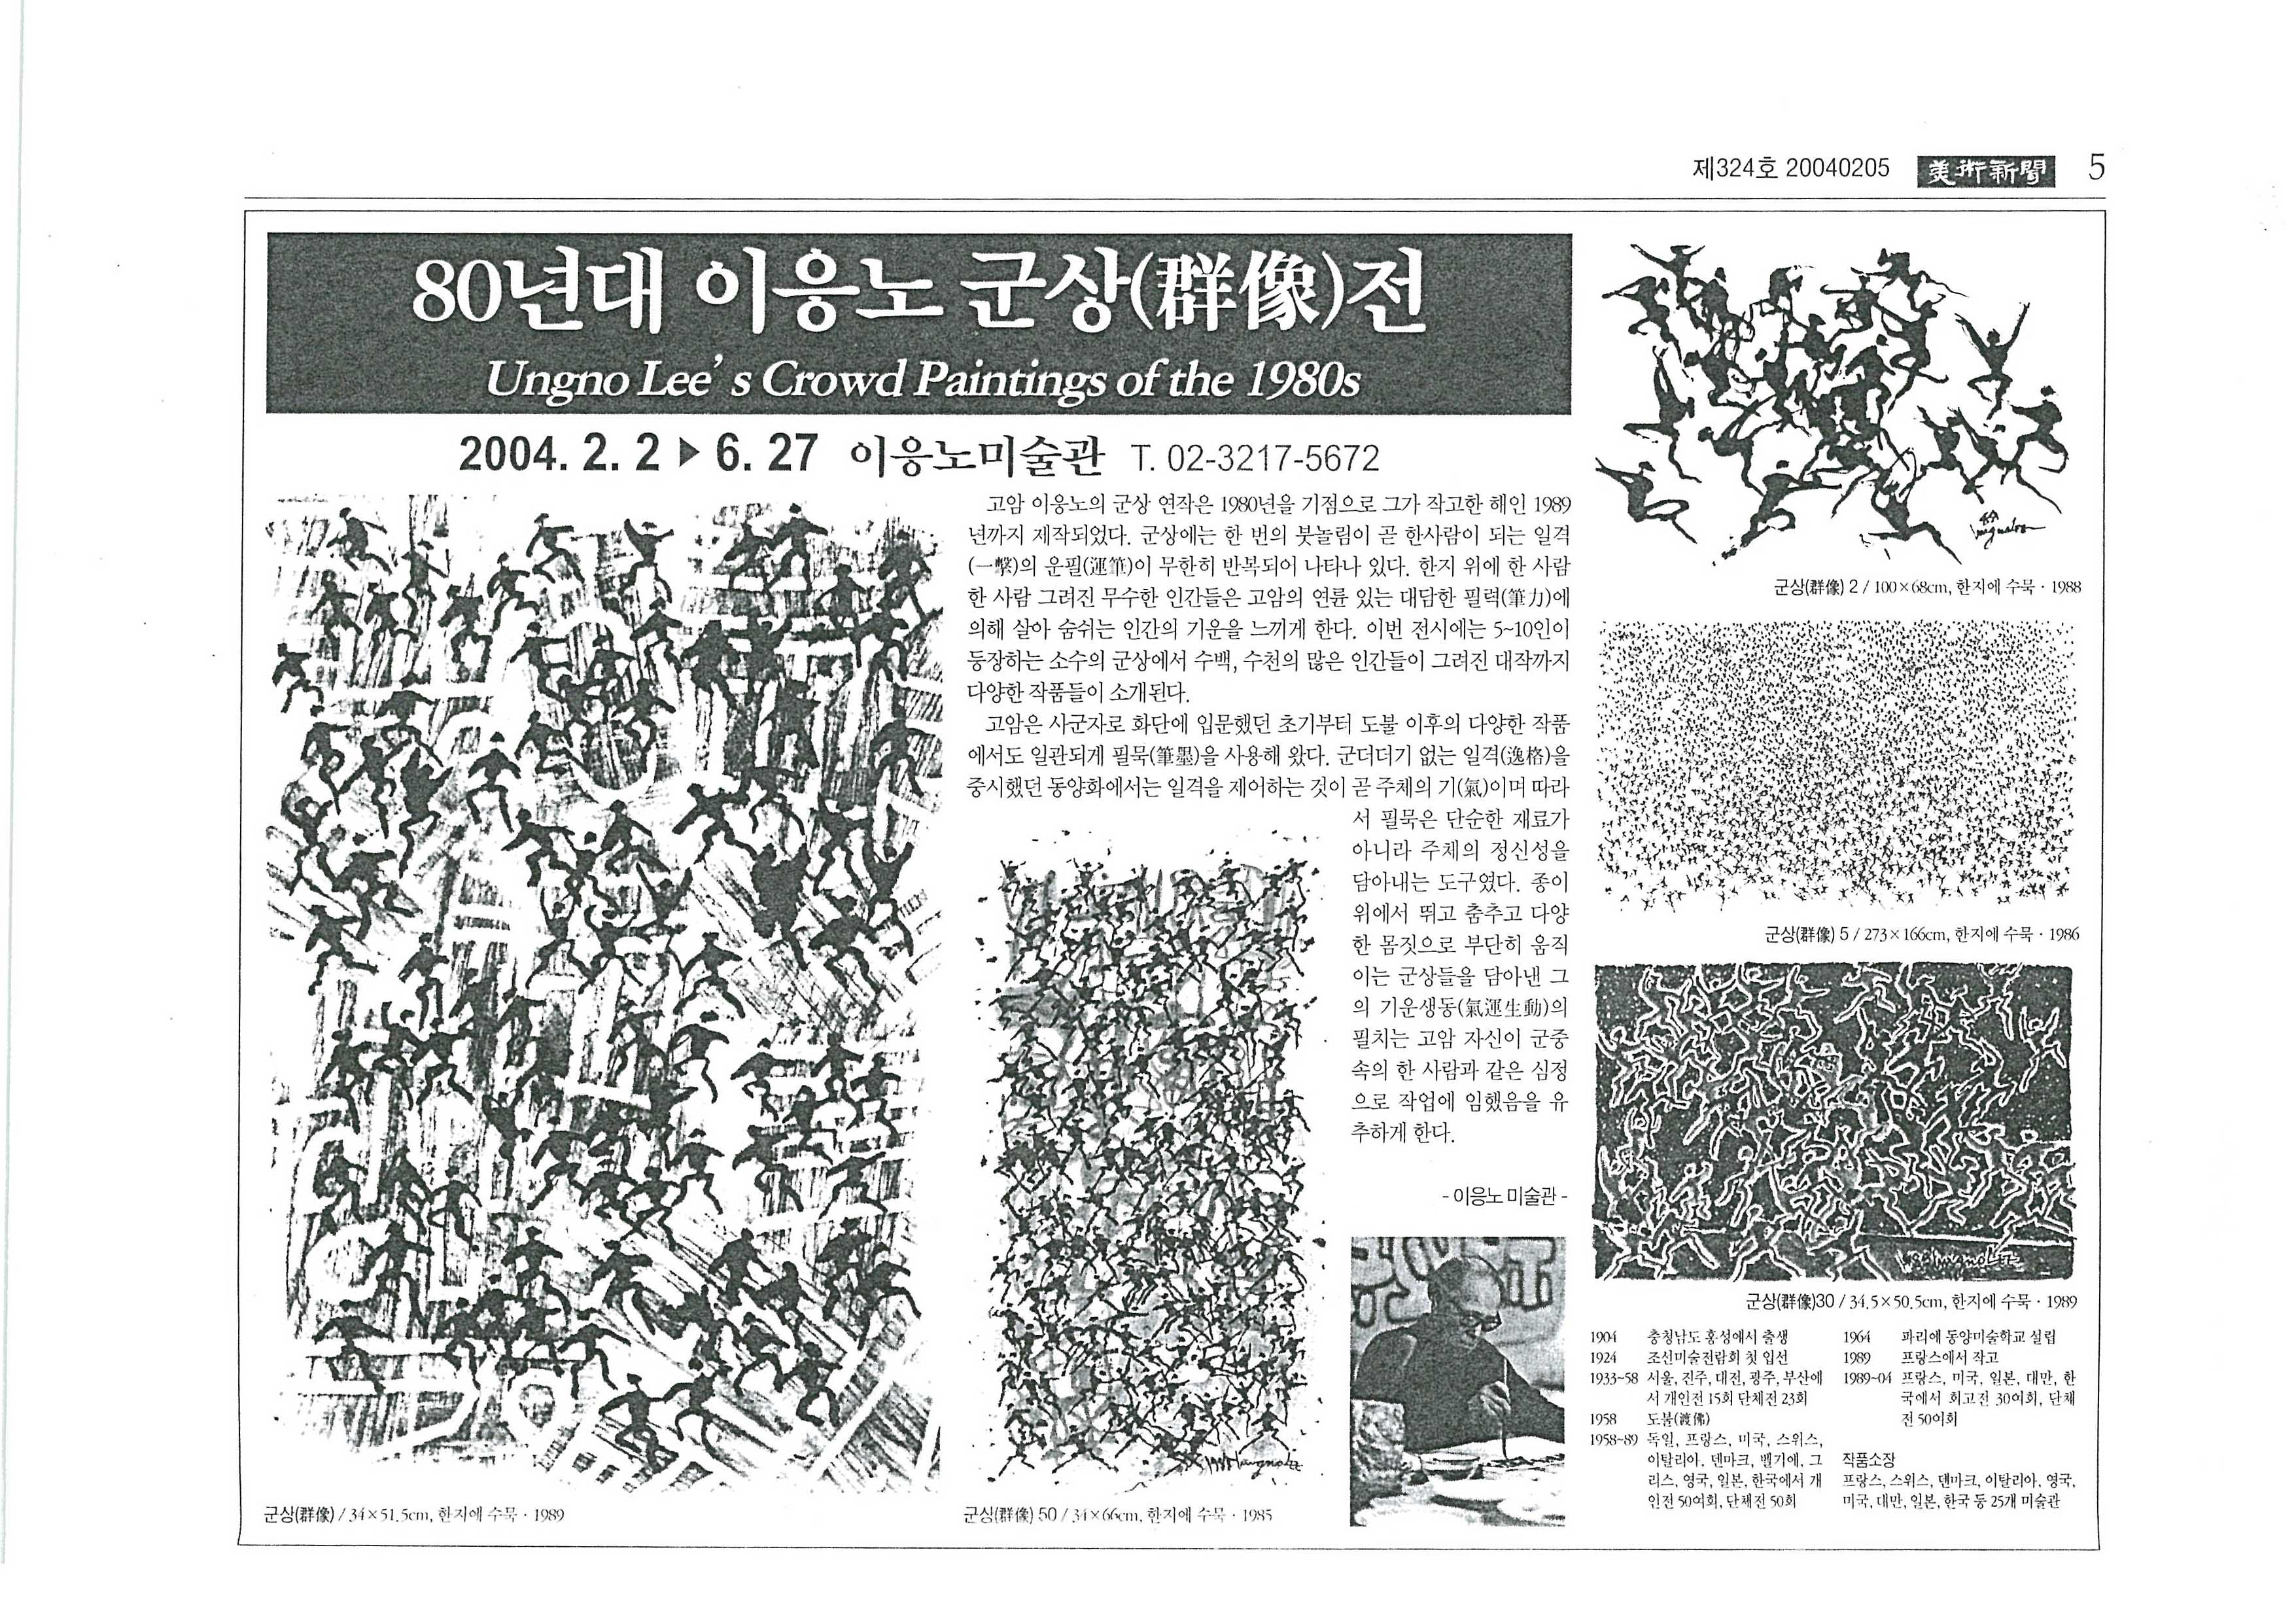 「80년대 이응노 군상(群像)전」, 『미술신문』